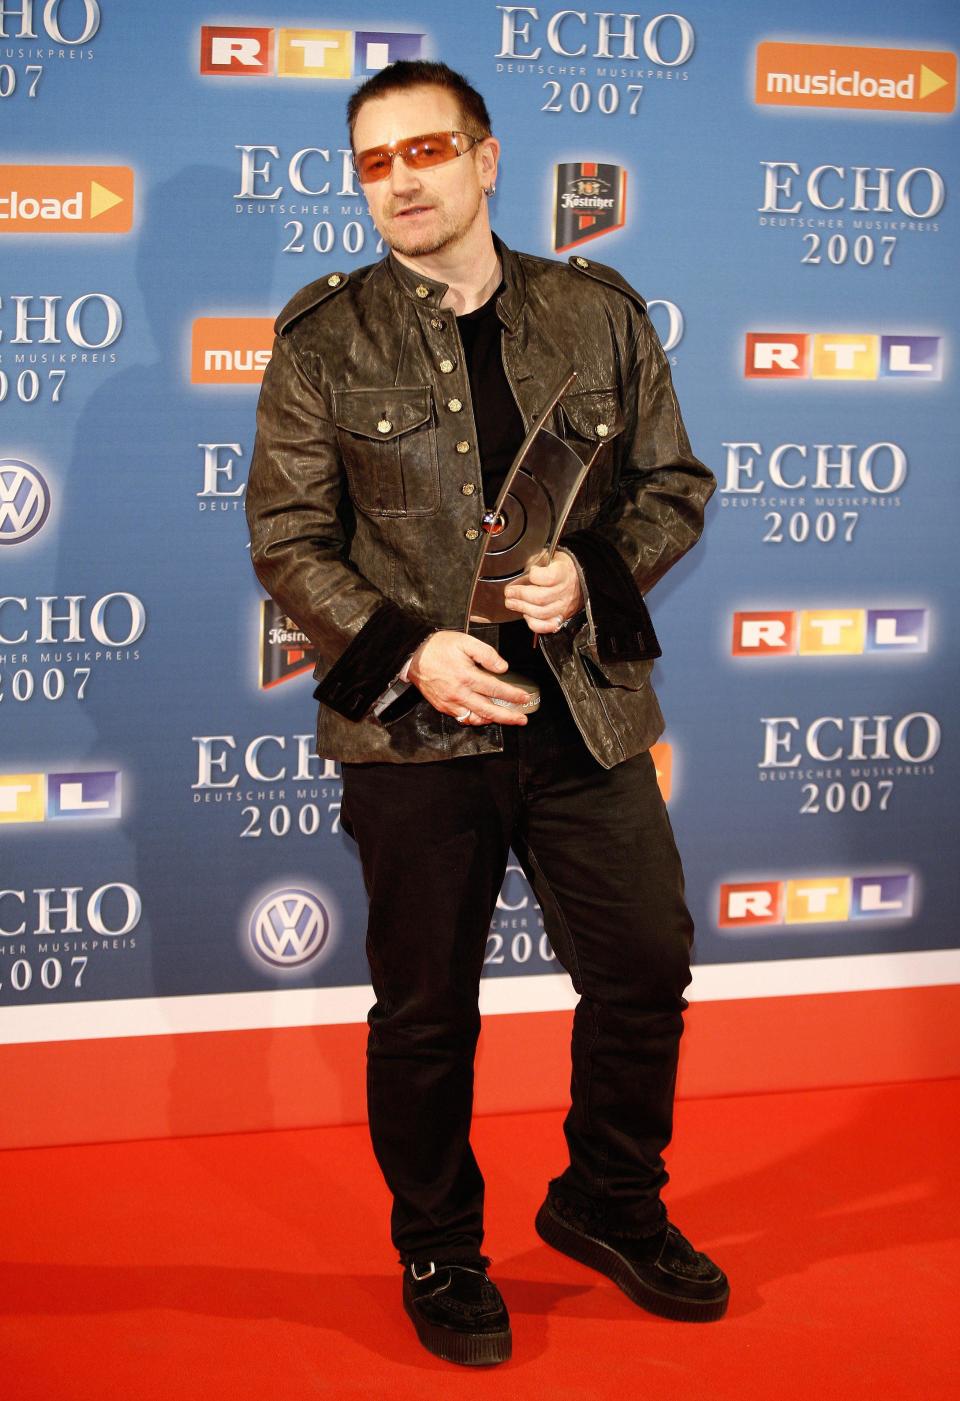 Den Anfang macht Bono von "U2". Der irische Musiker erschien gewohnt lässig und posierte für die wartenden Fotografen cool auf dem roten Teppich. Nicht der einzige gut gelaunte Promi, der 2007 den Echo besuchte. (Bild-Copyright: WENN.com)